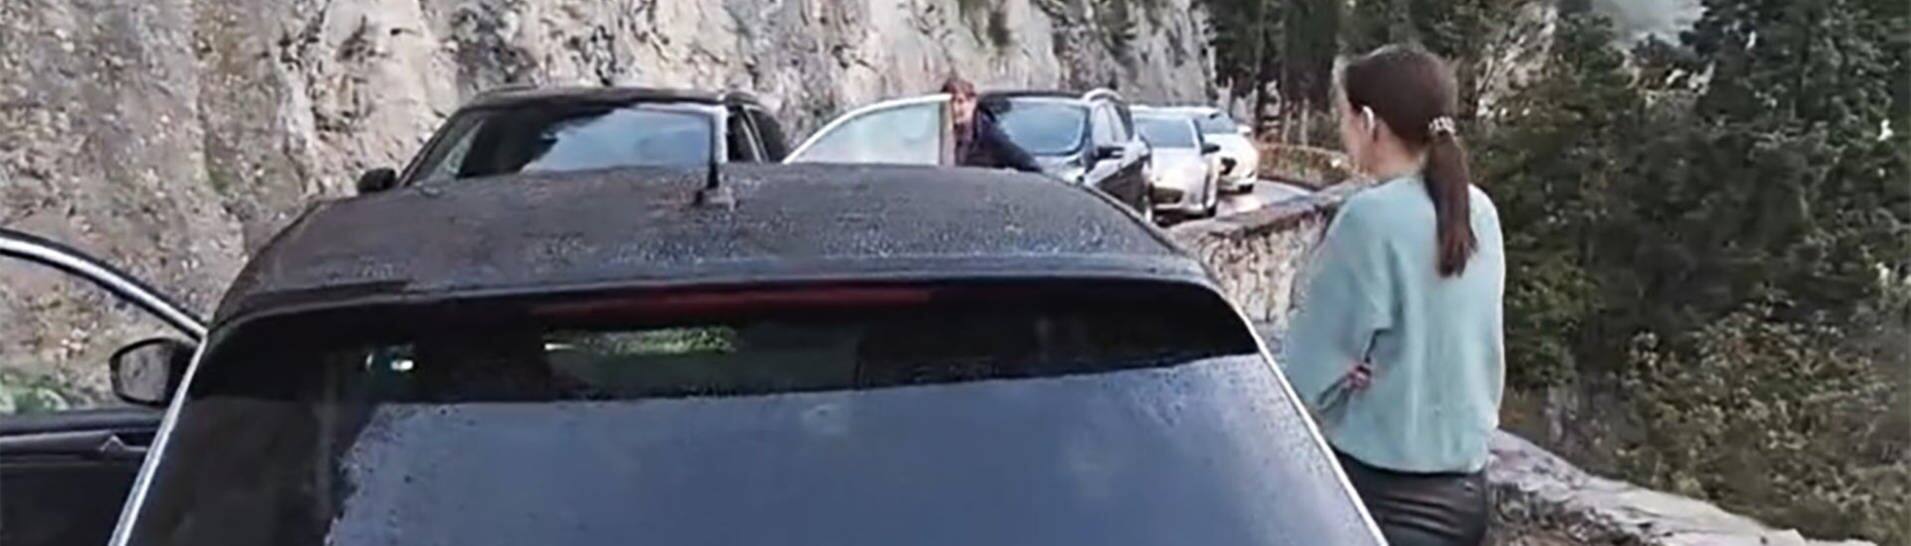 Ein Ausschnitt aus einem TikTok-Video zeigt eine lange Schlange von Autos auf der schmalen Uferstraße des Gardasees. Das Verrückte: Die Autoschlange geht in beide Richtungen – die Autos stehen sich gegenüber.  (Foto: TikTok/ UweVorberg520)